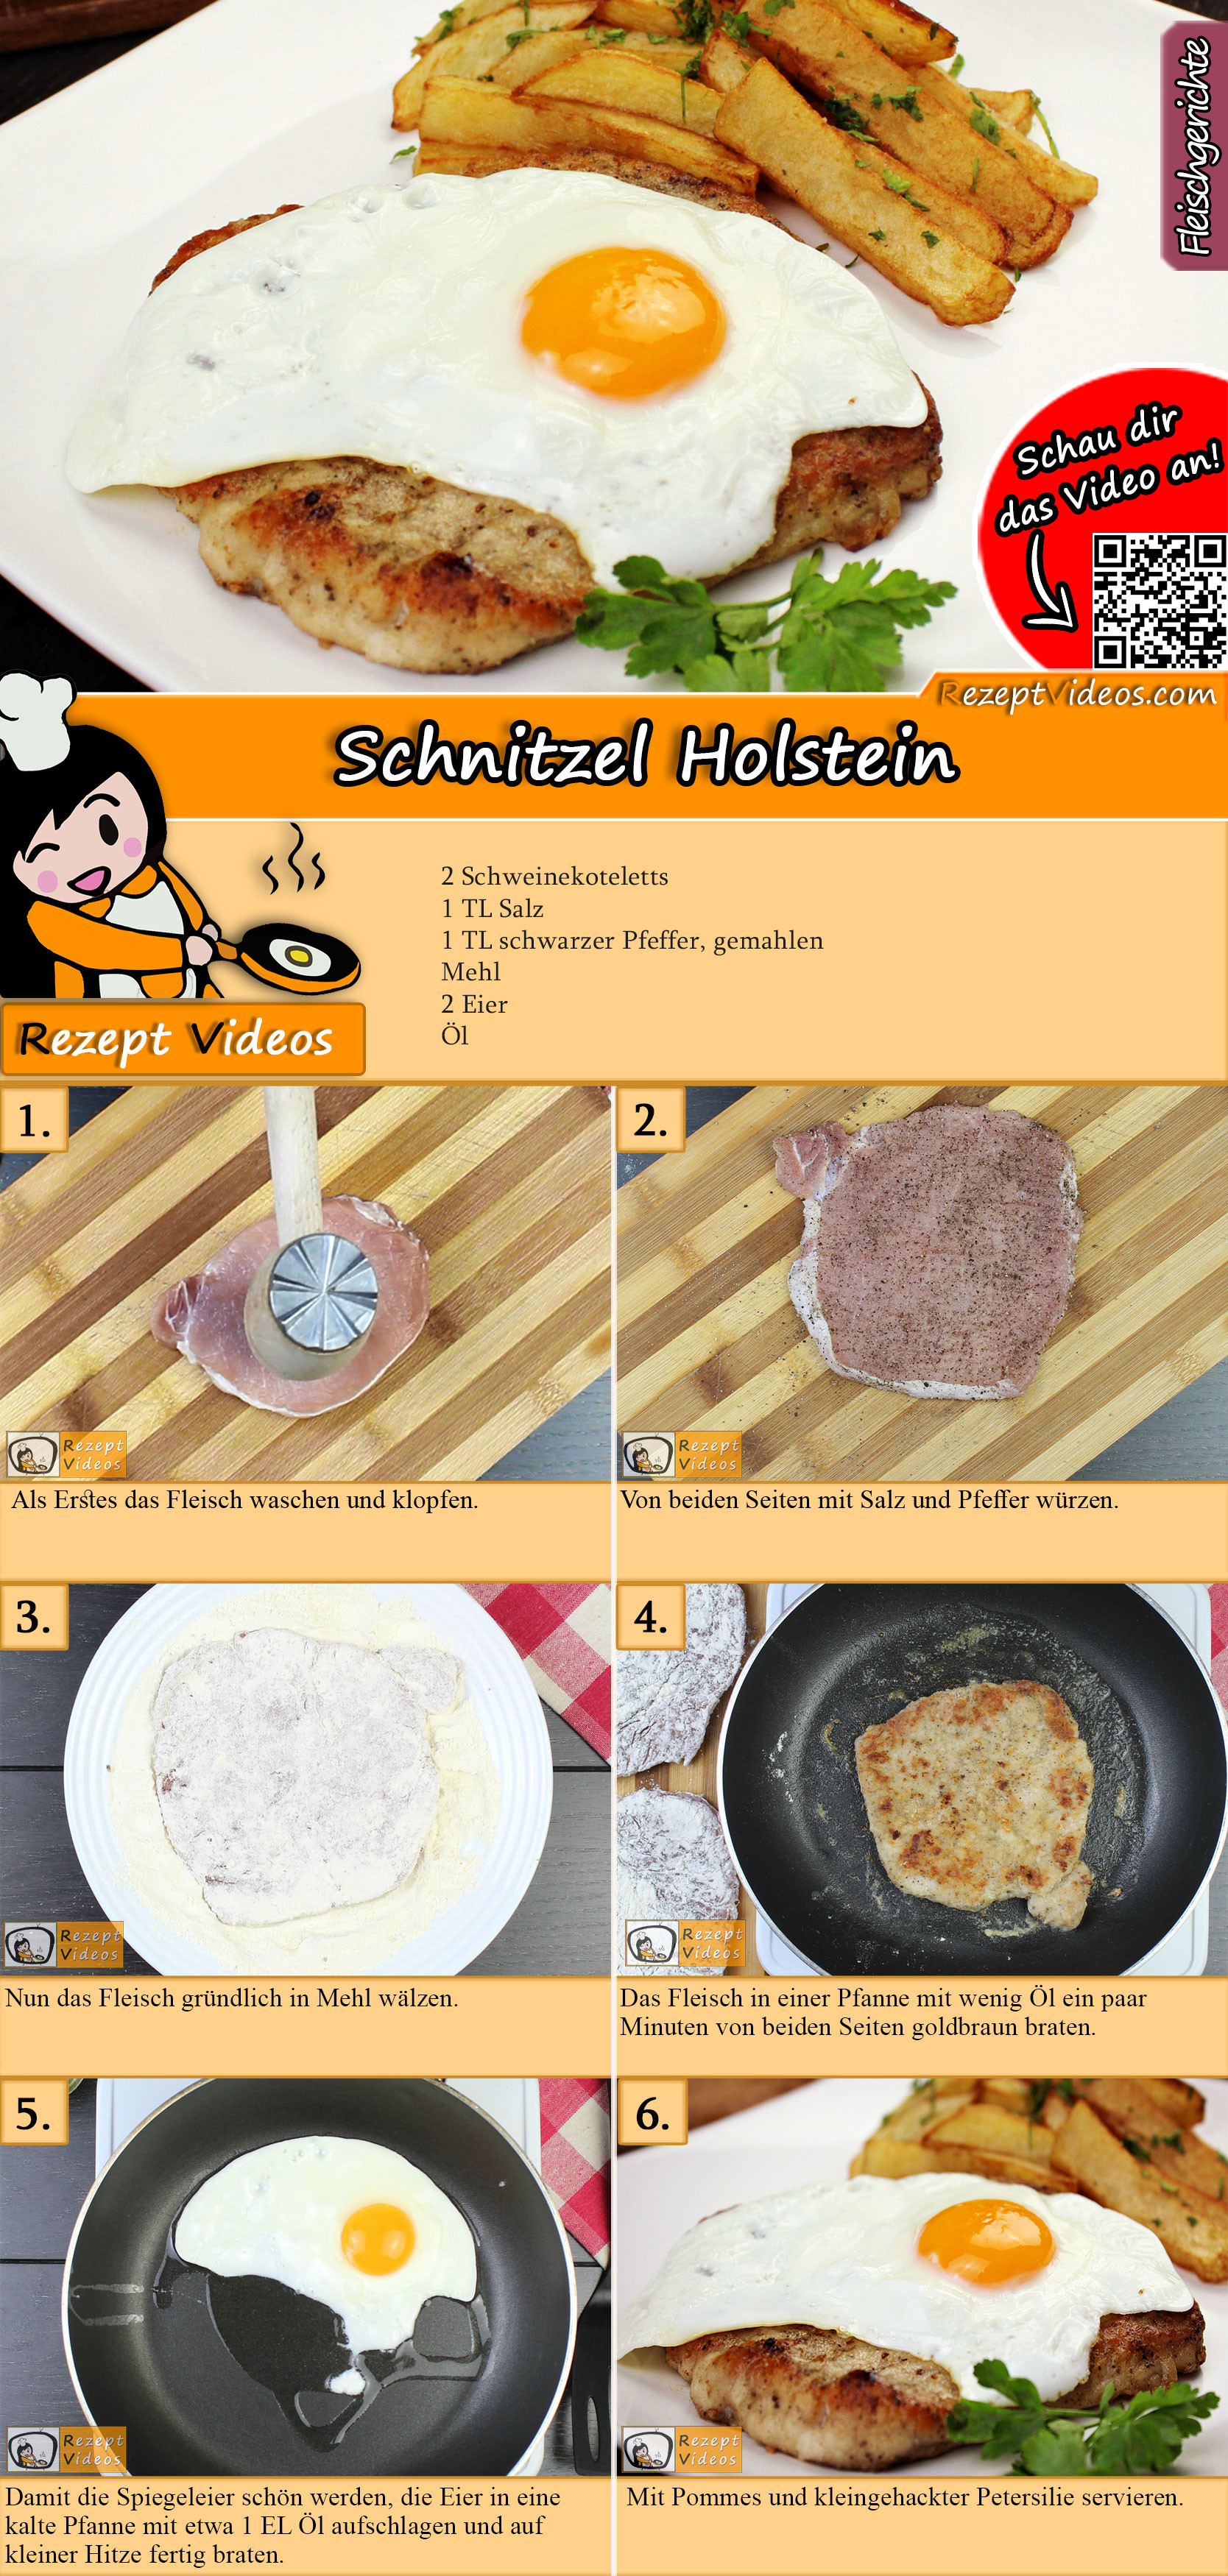 Schnitzel Holstein Rezept mit Video